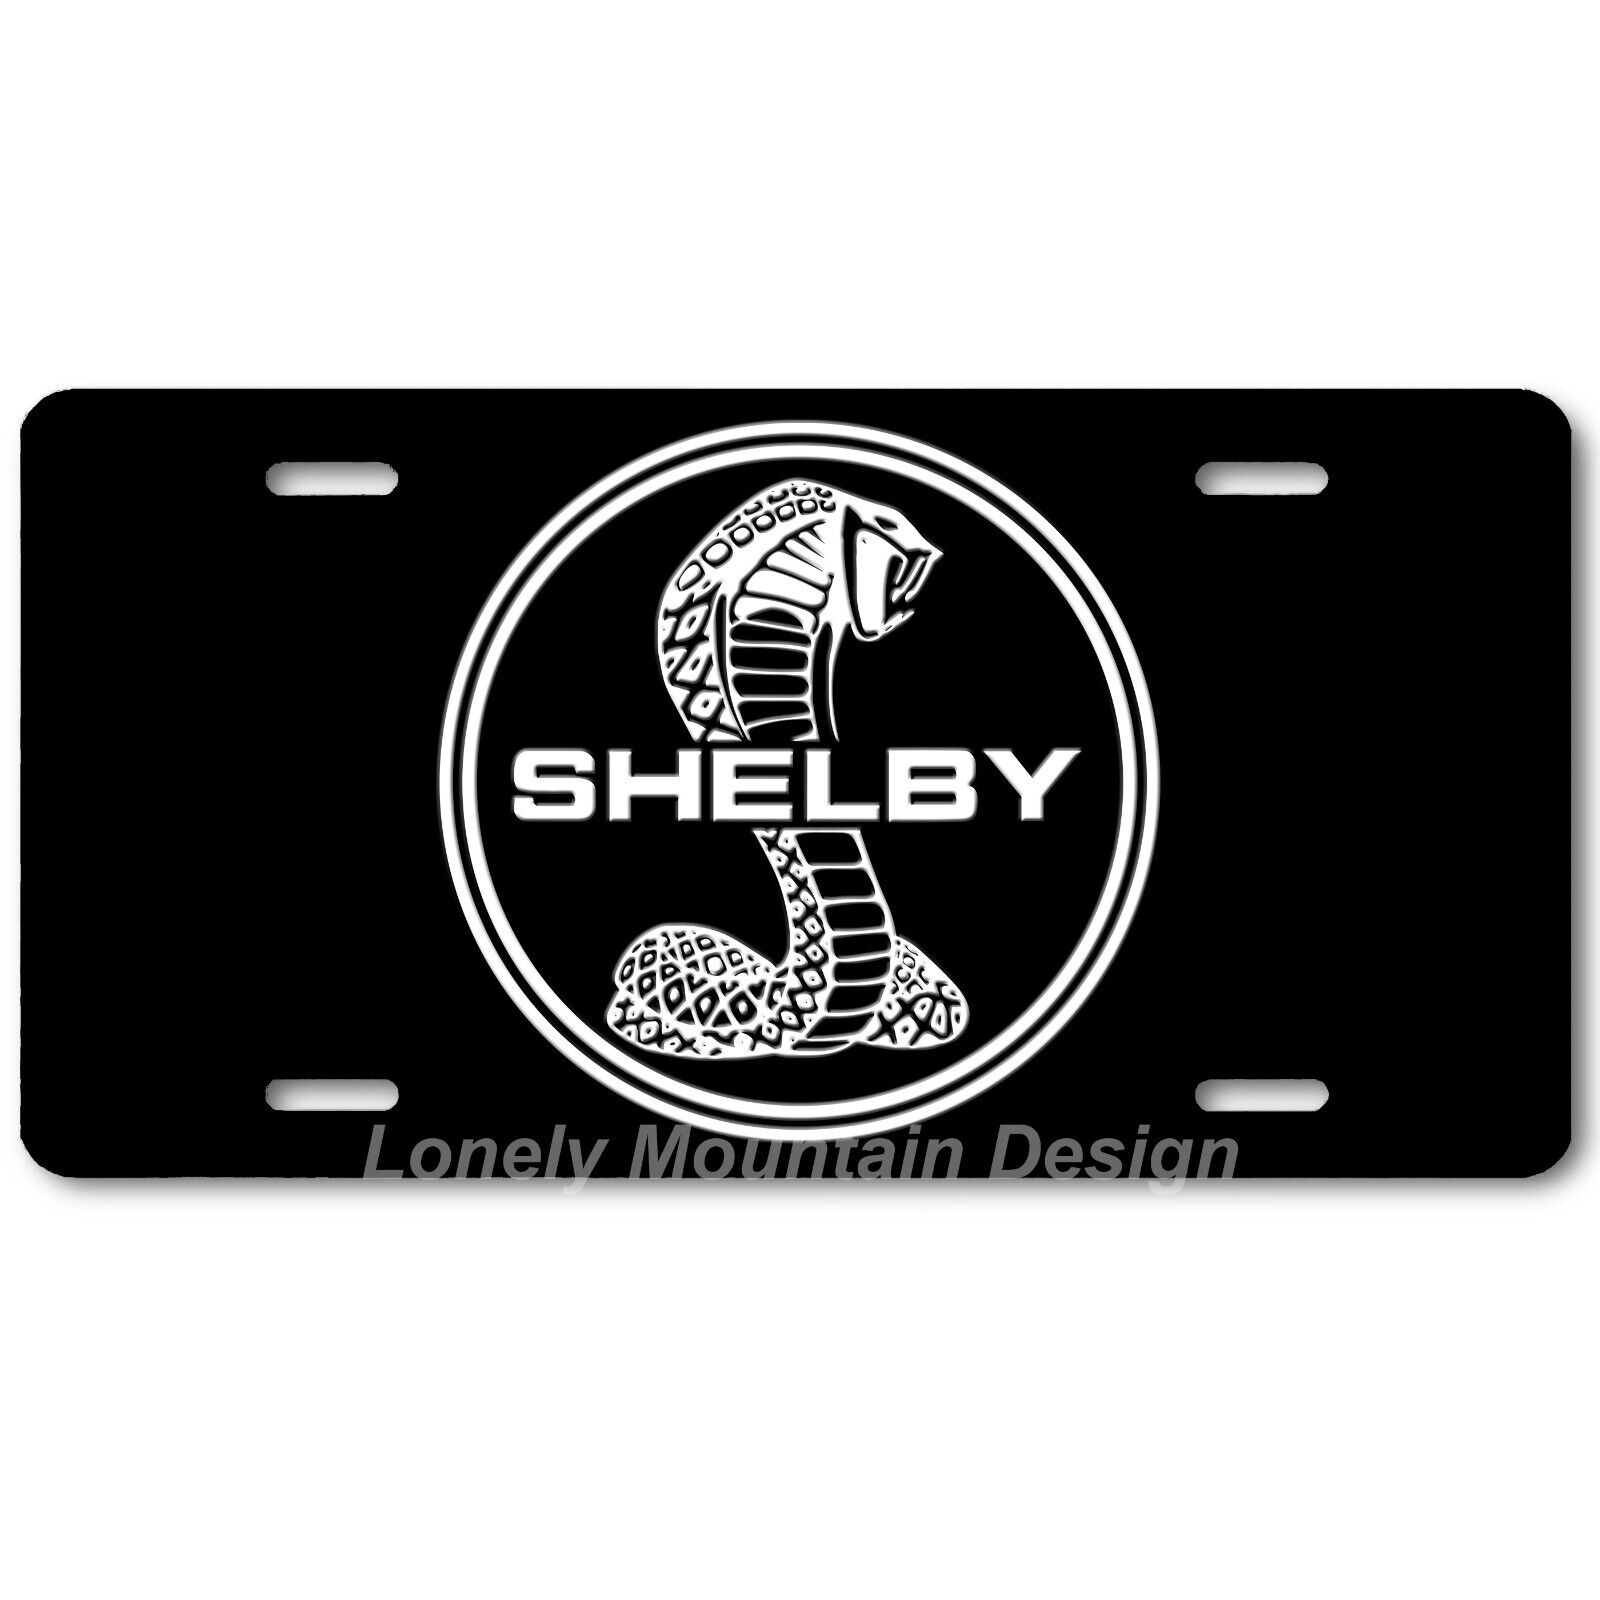 Shelby Cobra Inspired Art White on Black FLAT Aluminum Novelty License Tag Plate